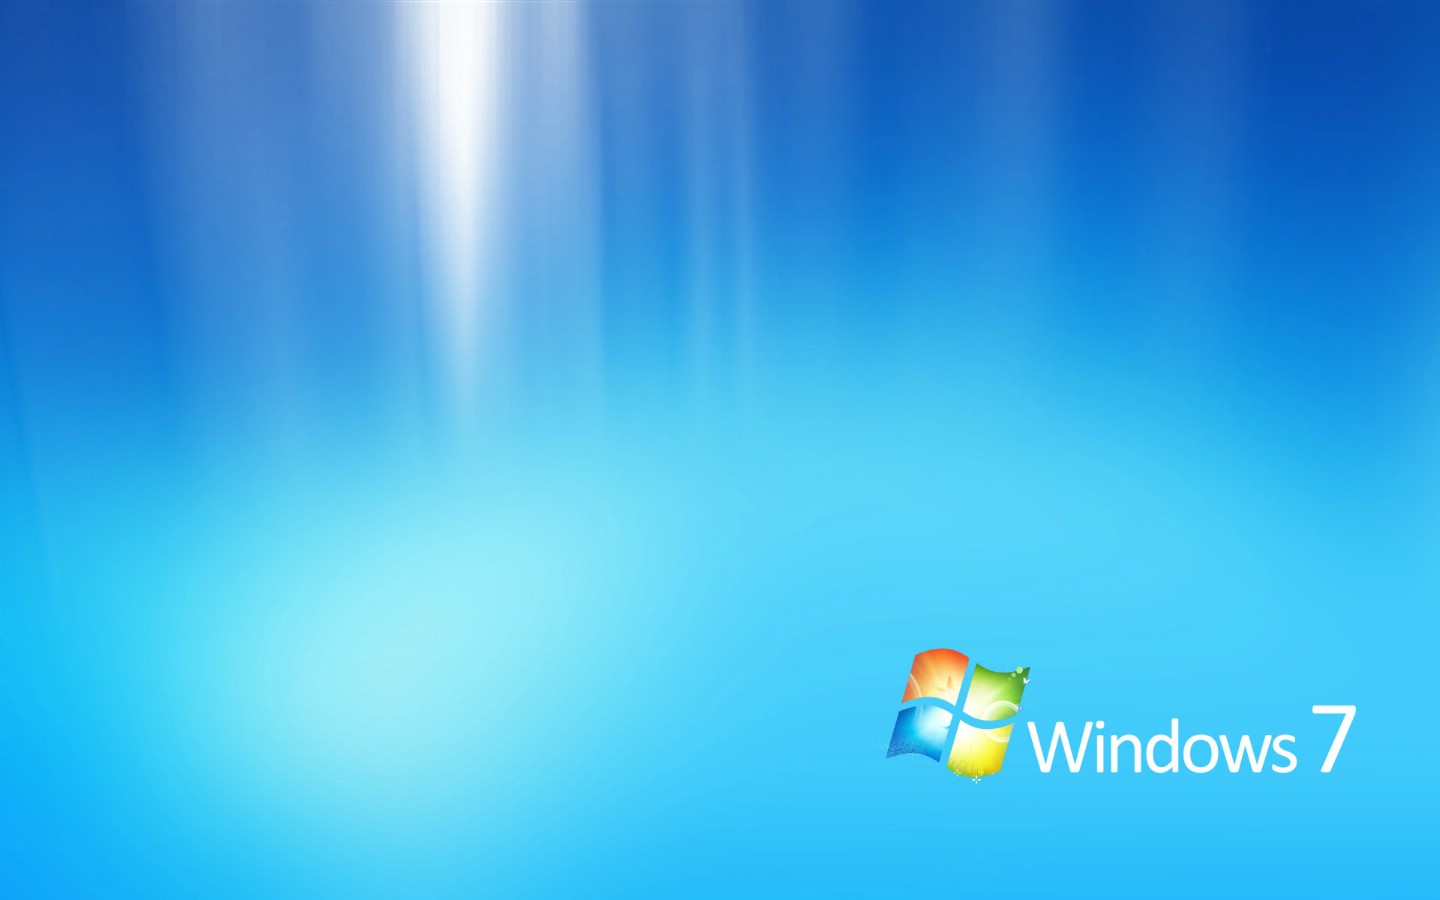 壁纸1440x900Windows7 5 3壁纸 Windows7壁纸 Windows7图片 Windows7素材 系统壁纸 系统图库 系统图片素材桌面壁纸